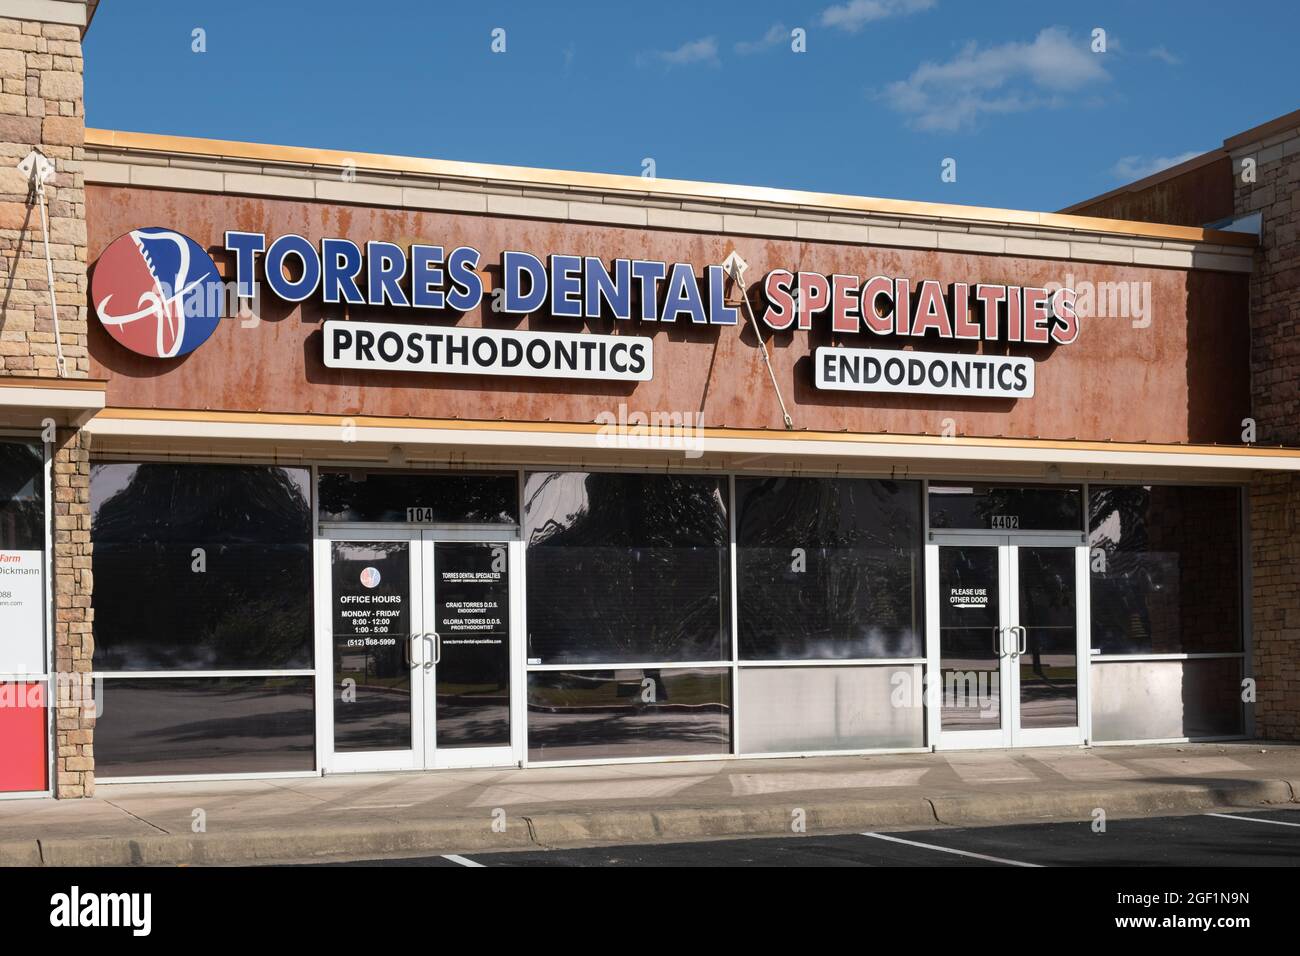 Cabinet dentaire spécialisé en prosthodontie et endodoncs Georgetown, Texas USA Banque D'Images